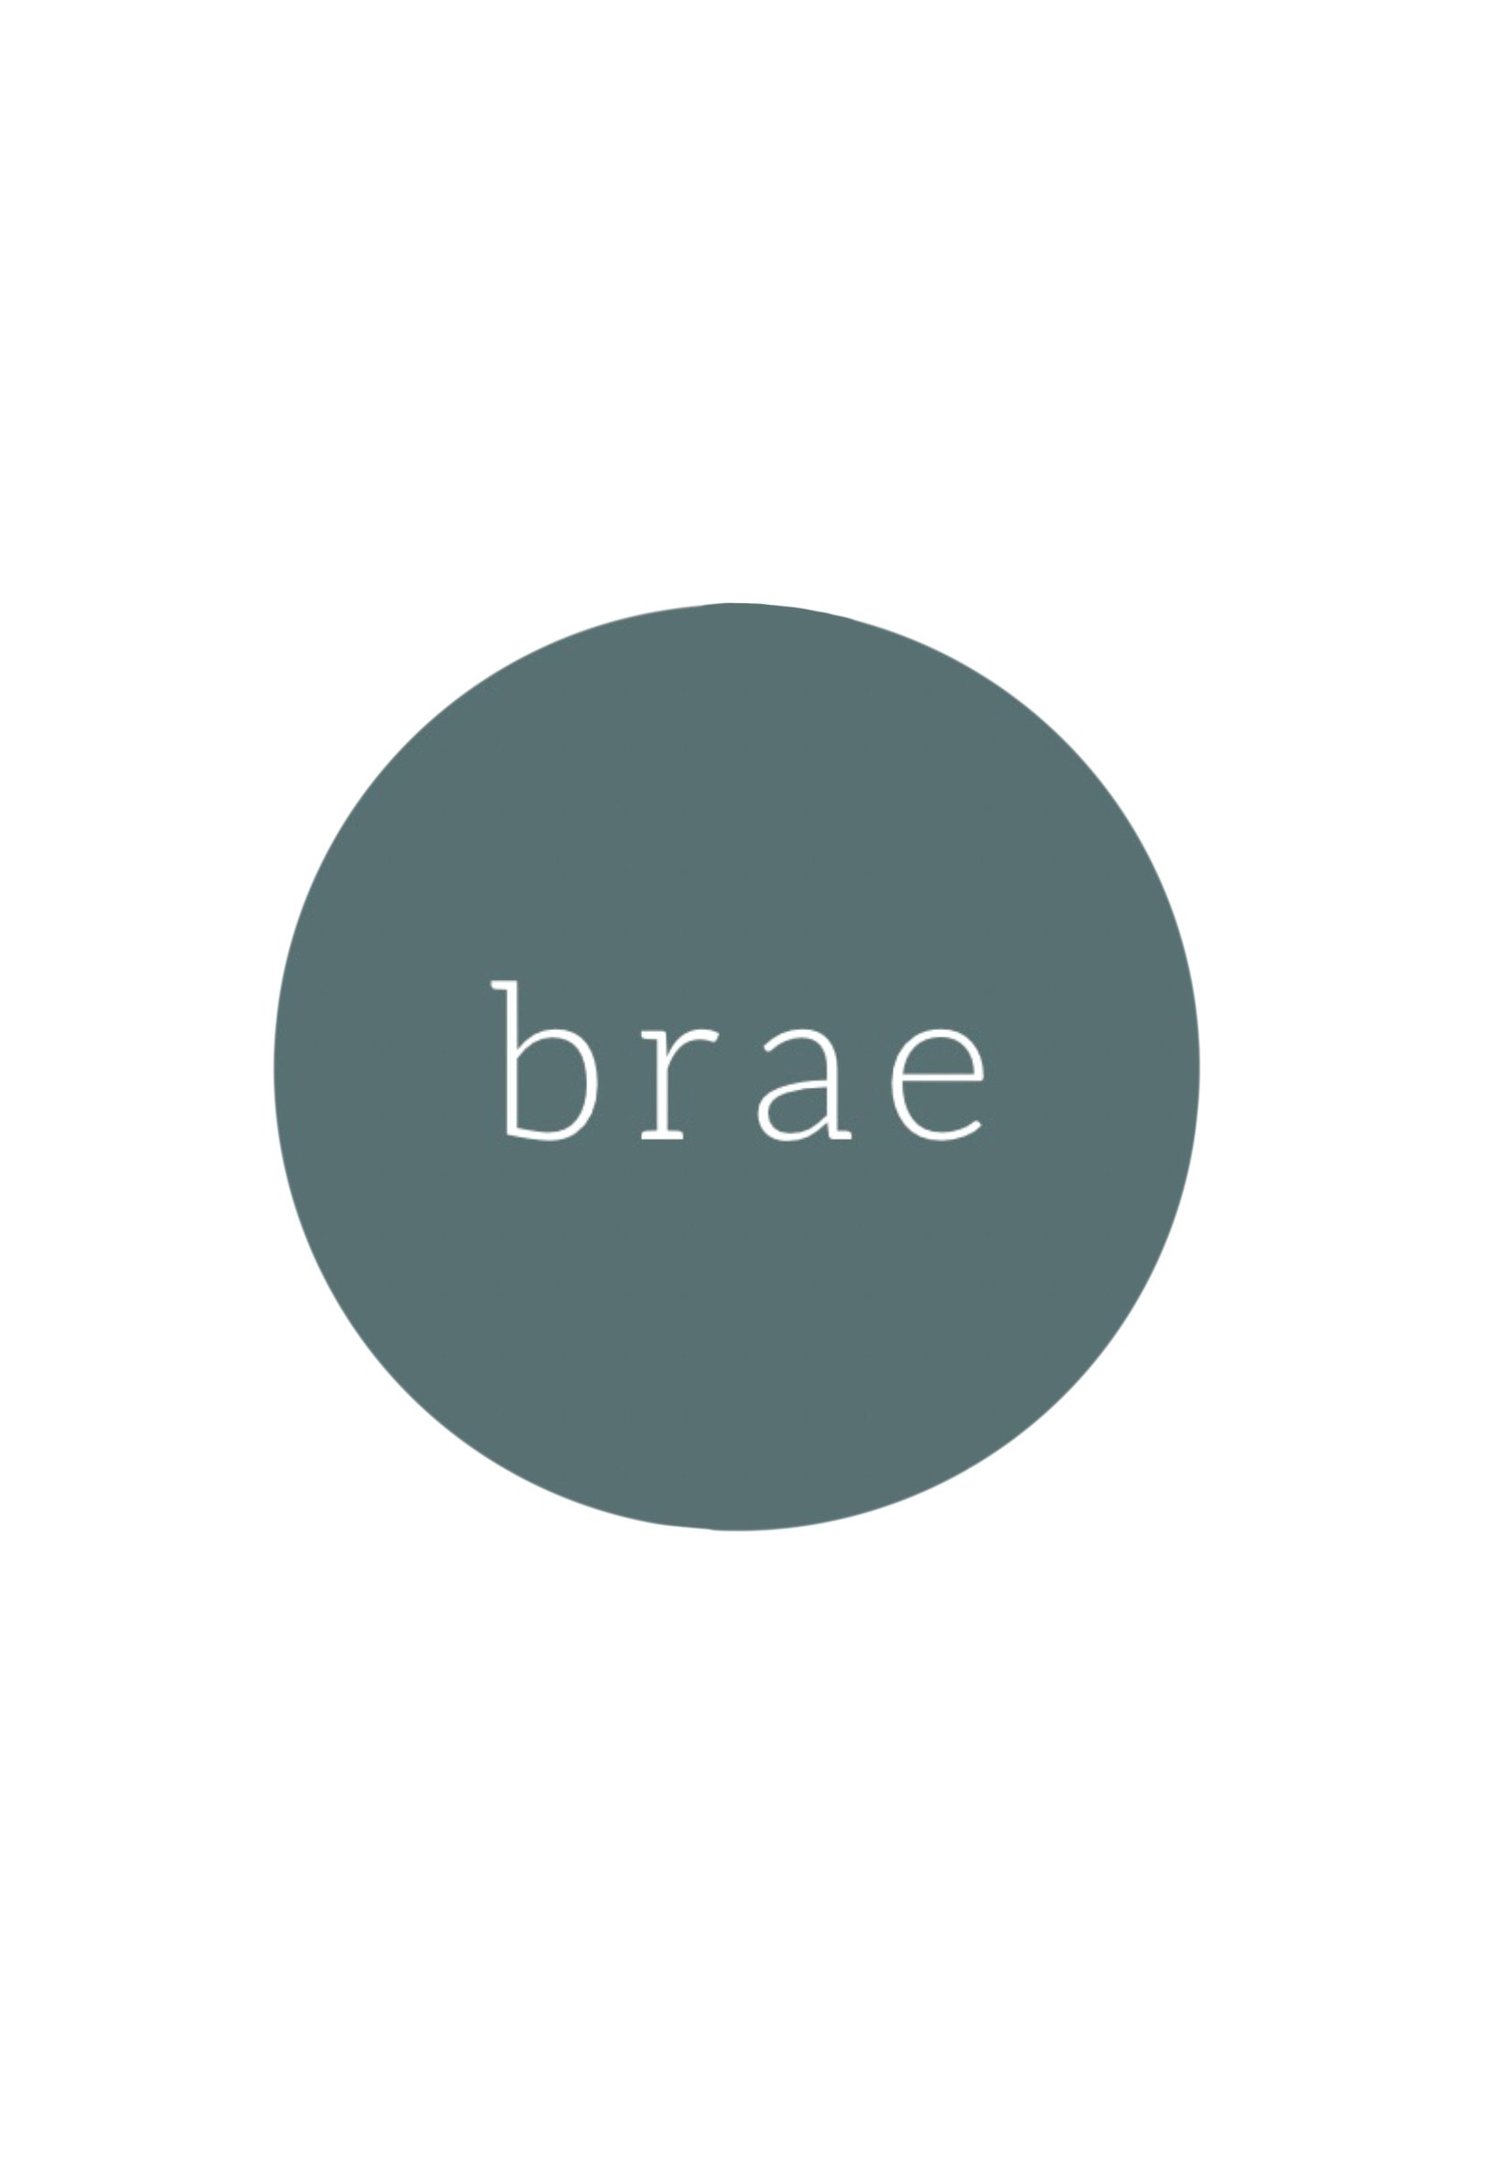 Brae